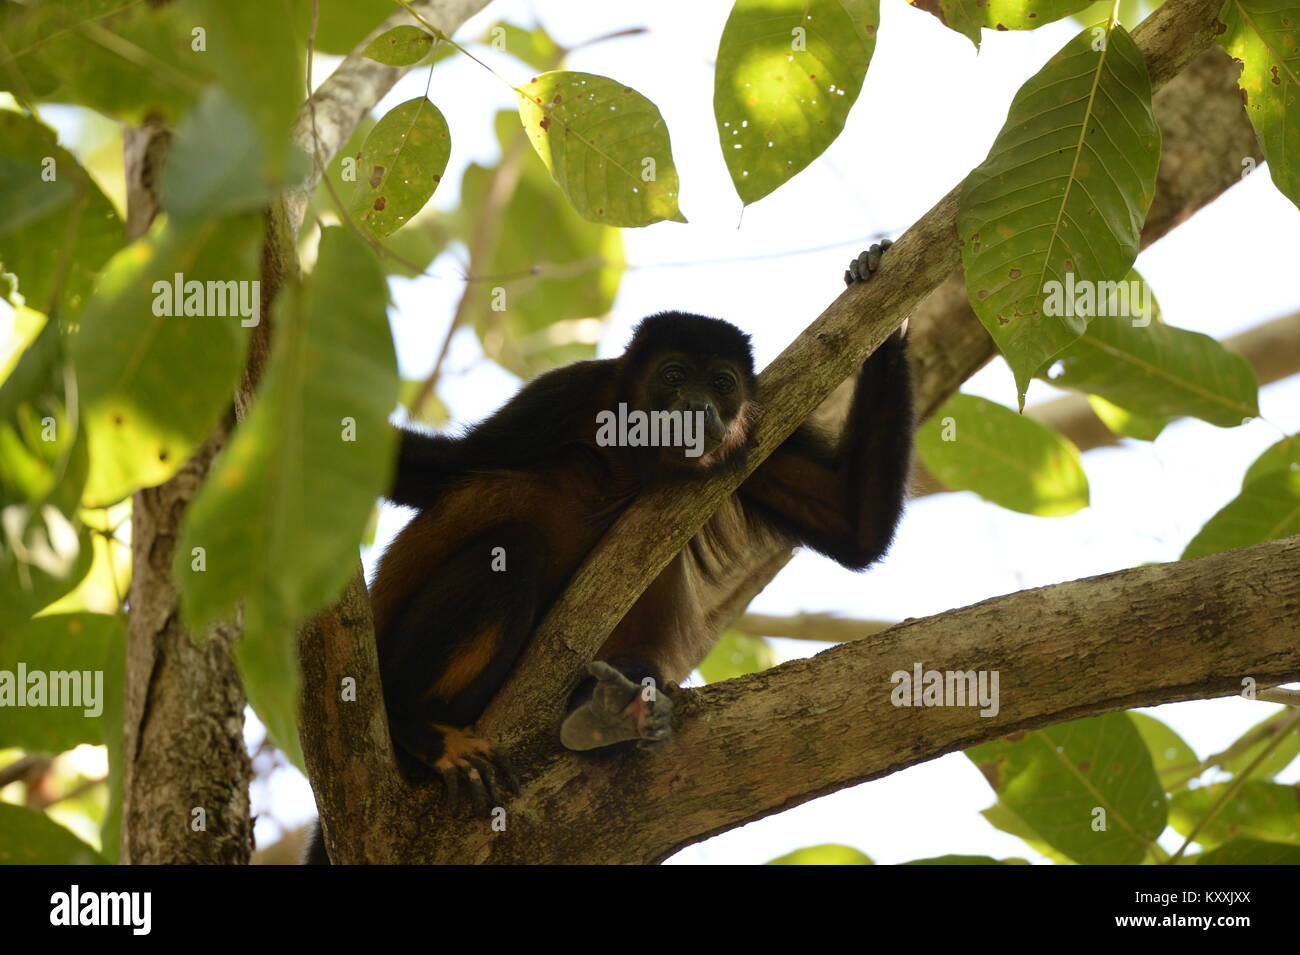 Les singes hurleurs mènent une vie tranquille en évitant le contact humain au Costa Rica. L'homme fort peut être entendu à l'aube dans quelques endroits sur la Péninsule de Nicoya Banque D'Images